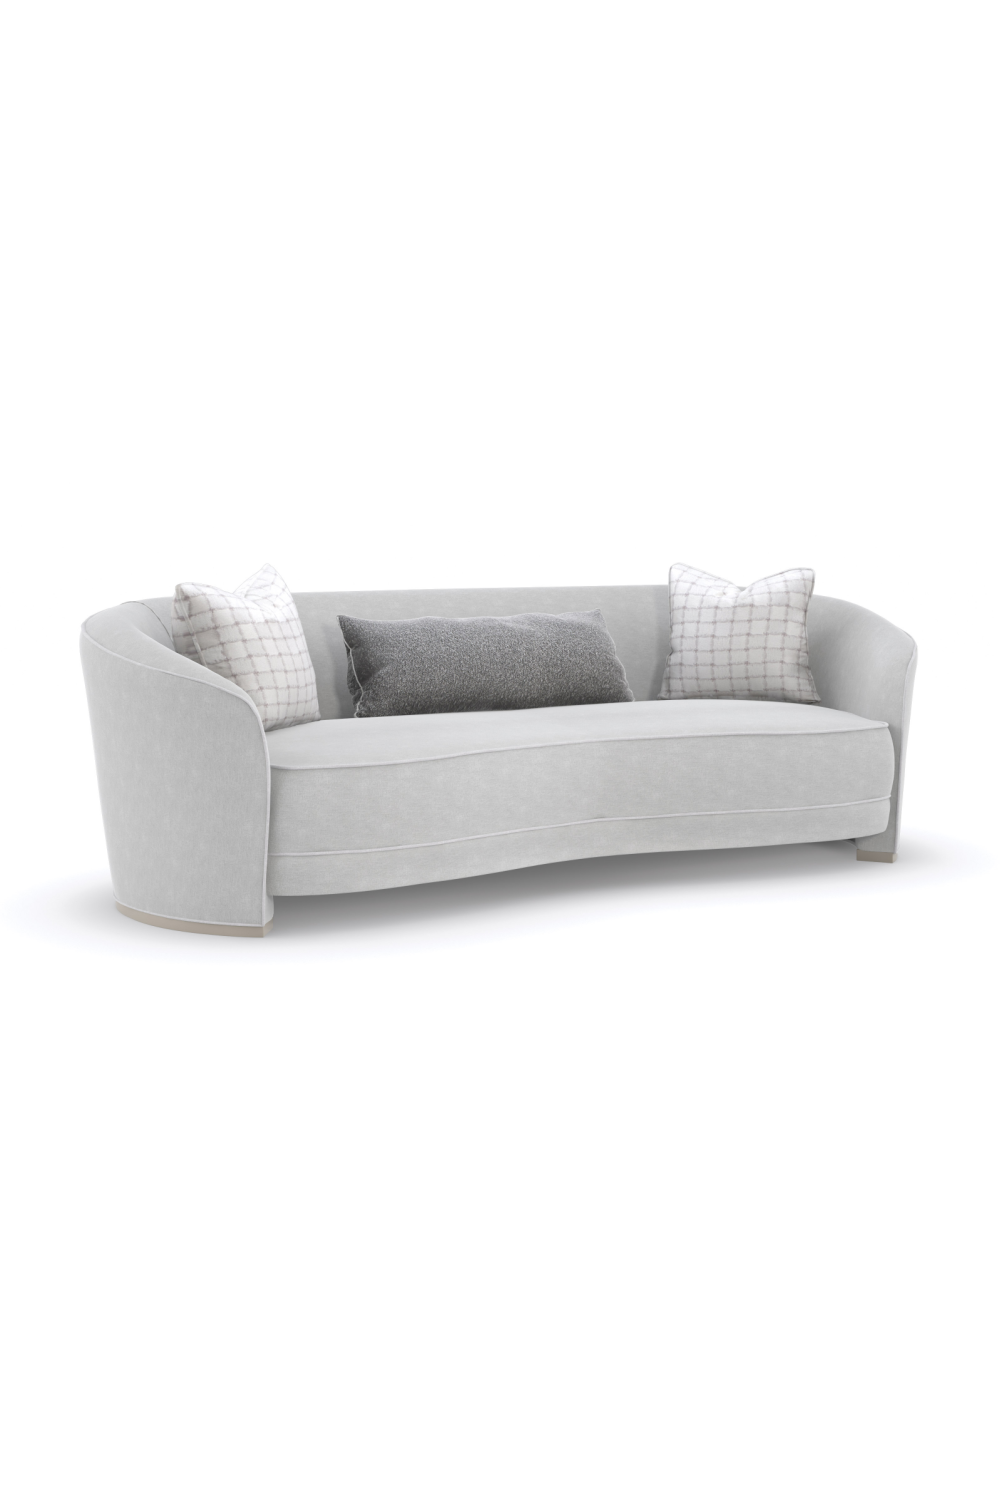 Light Gray Curved Sofa | Caracole Ahead Of The Curve | Oroa.com